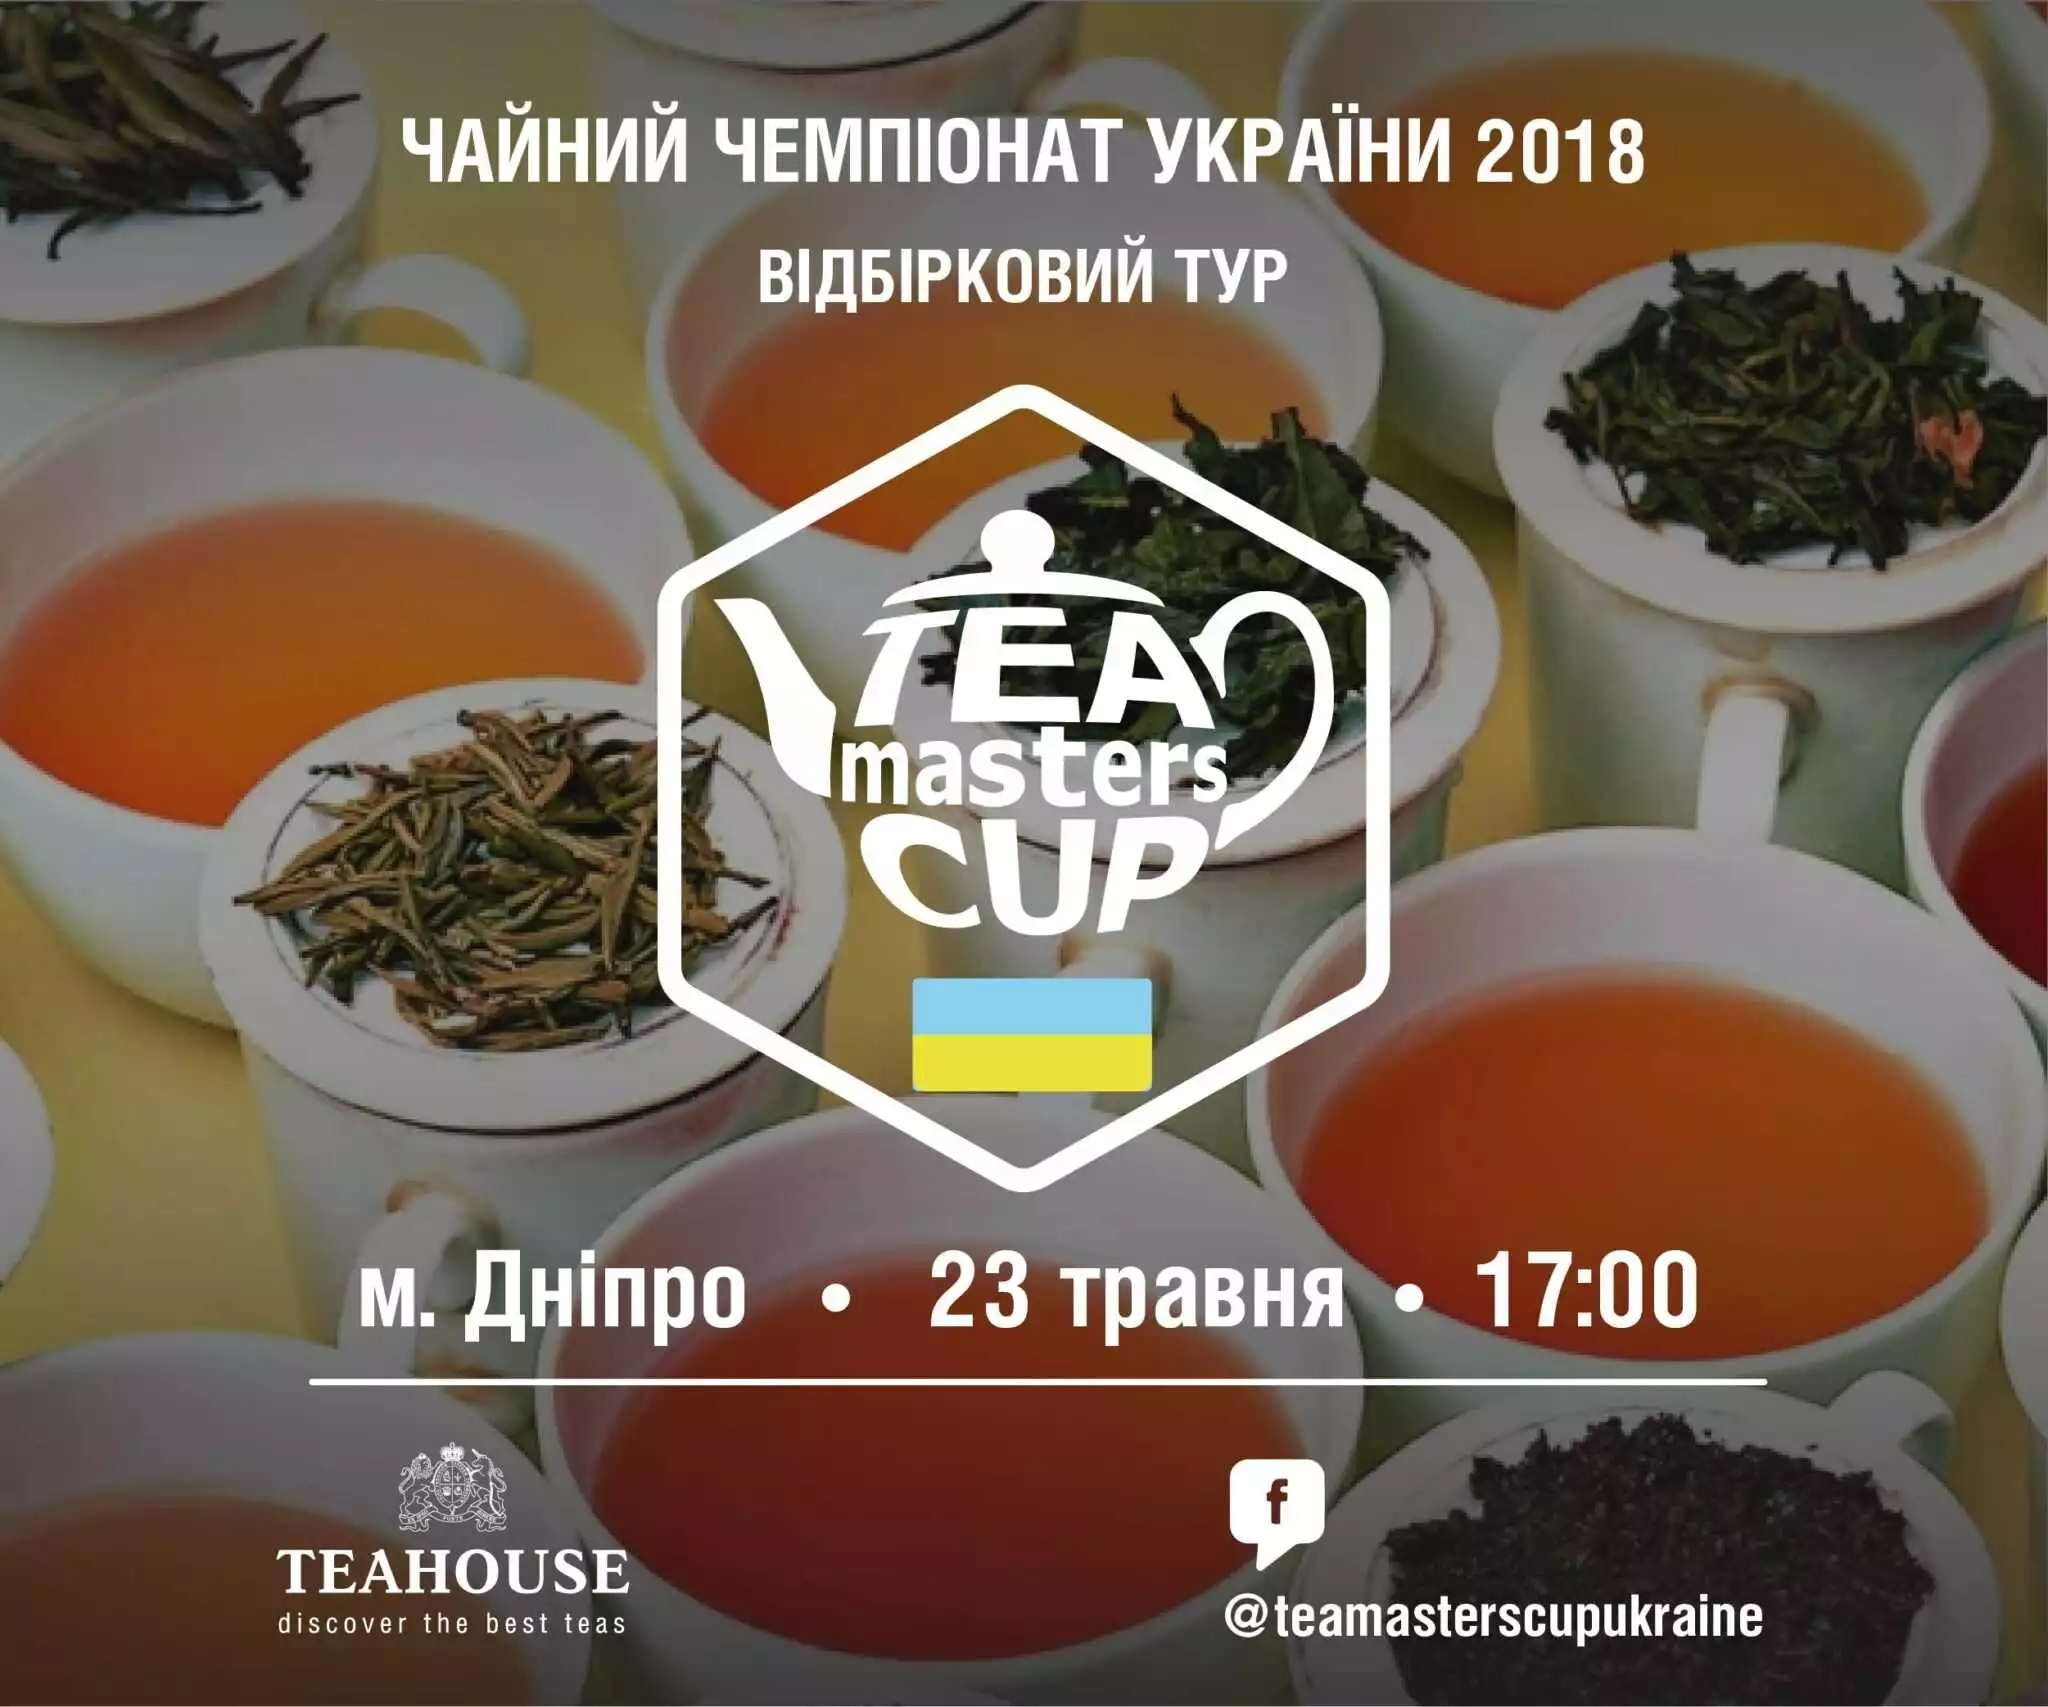 Відбірковий тур Чайного чемпіонату України 2018